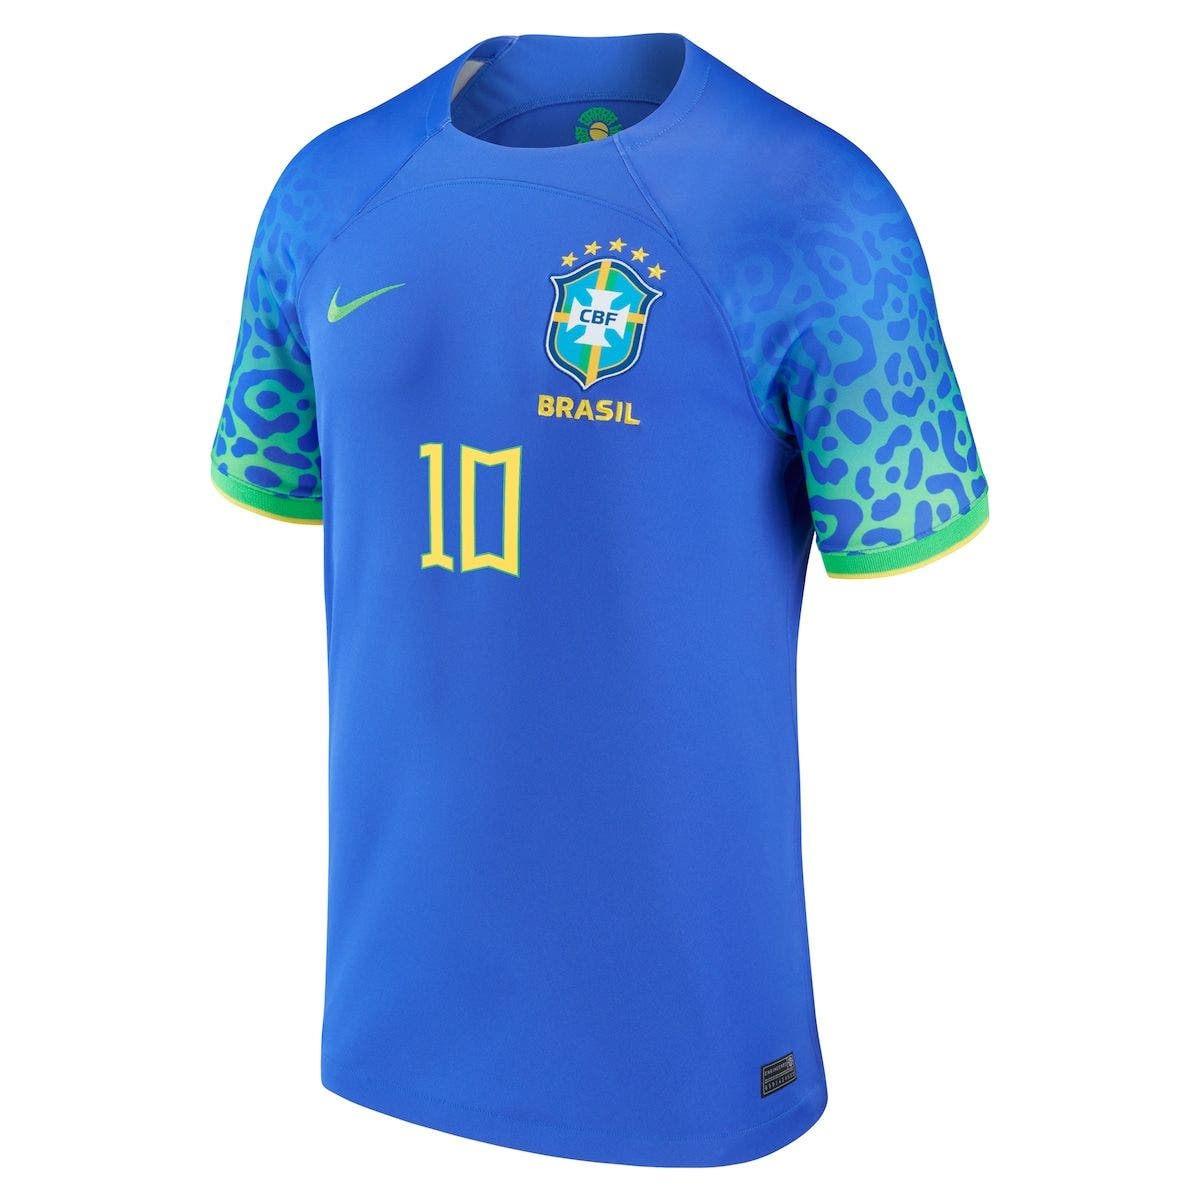 brazil official jersey